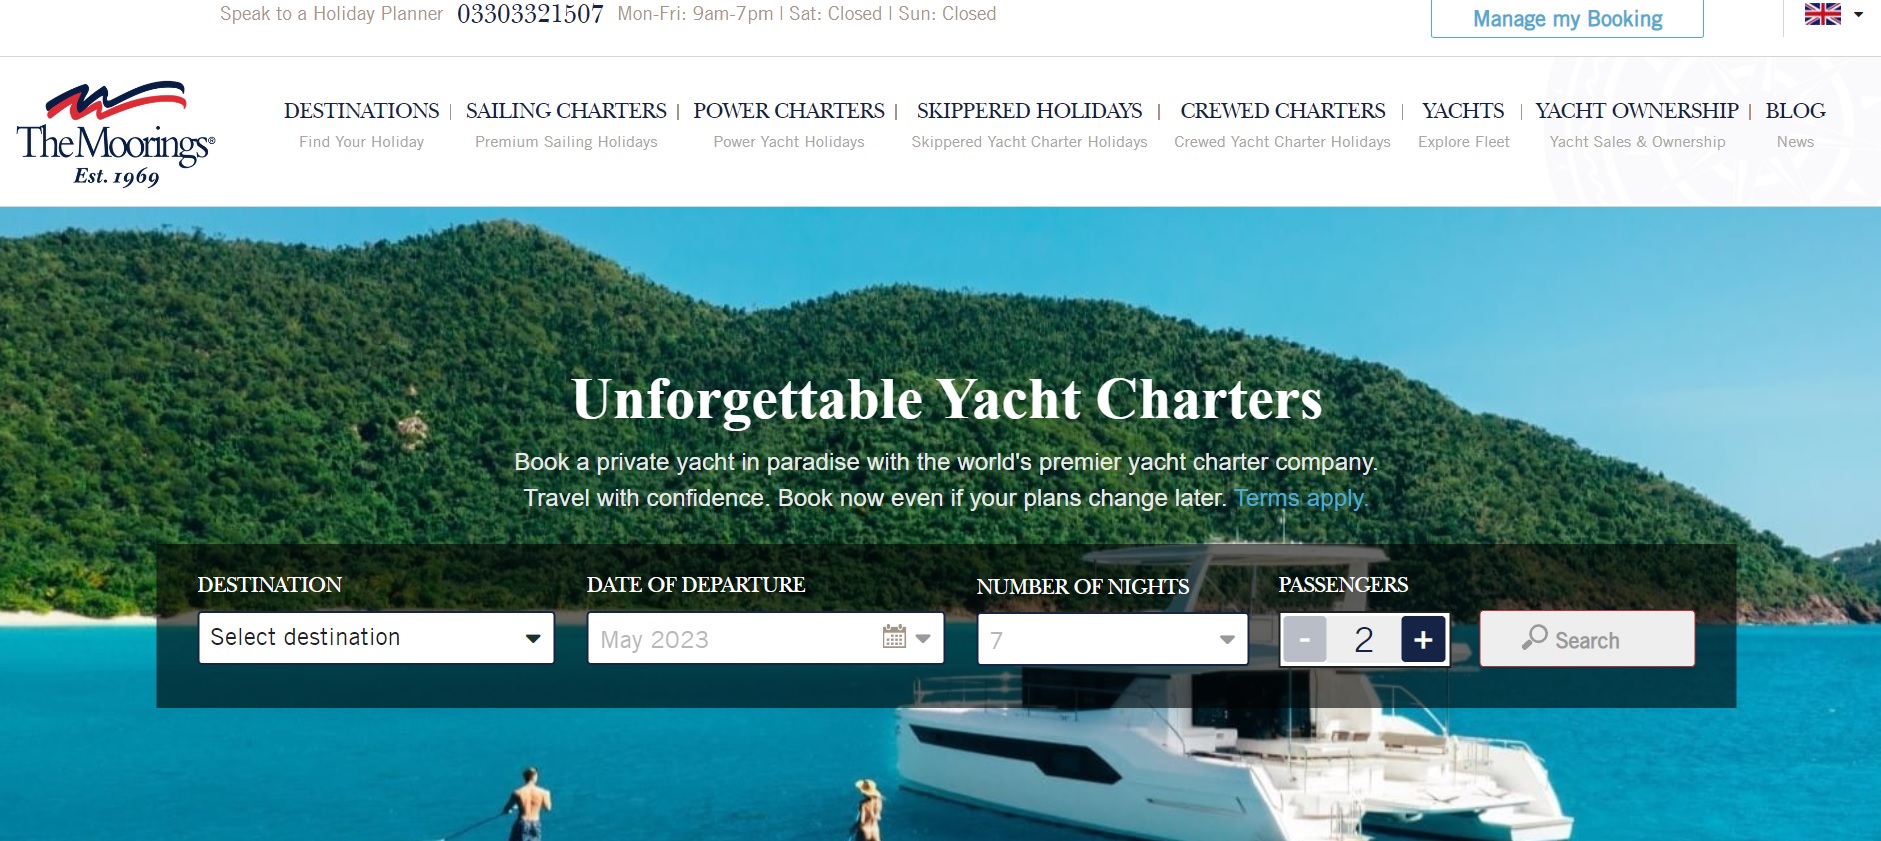 Website for Boat Rental Companies - Moorings